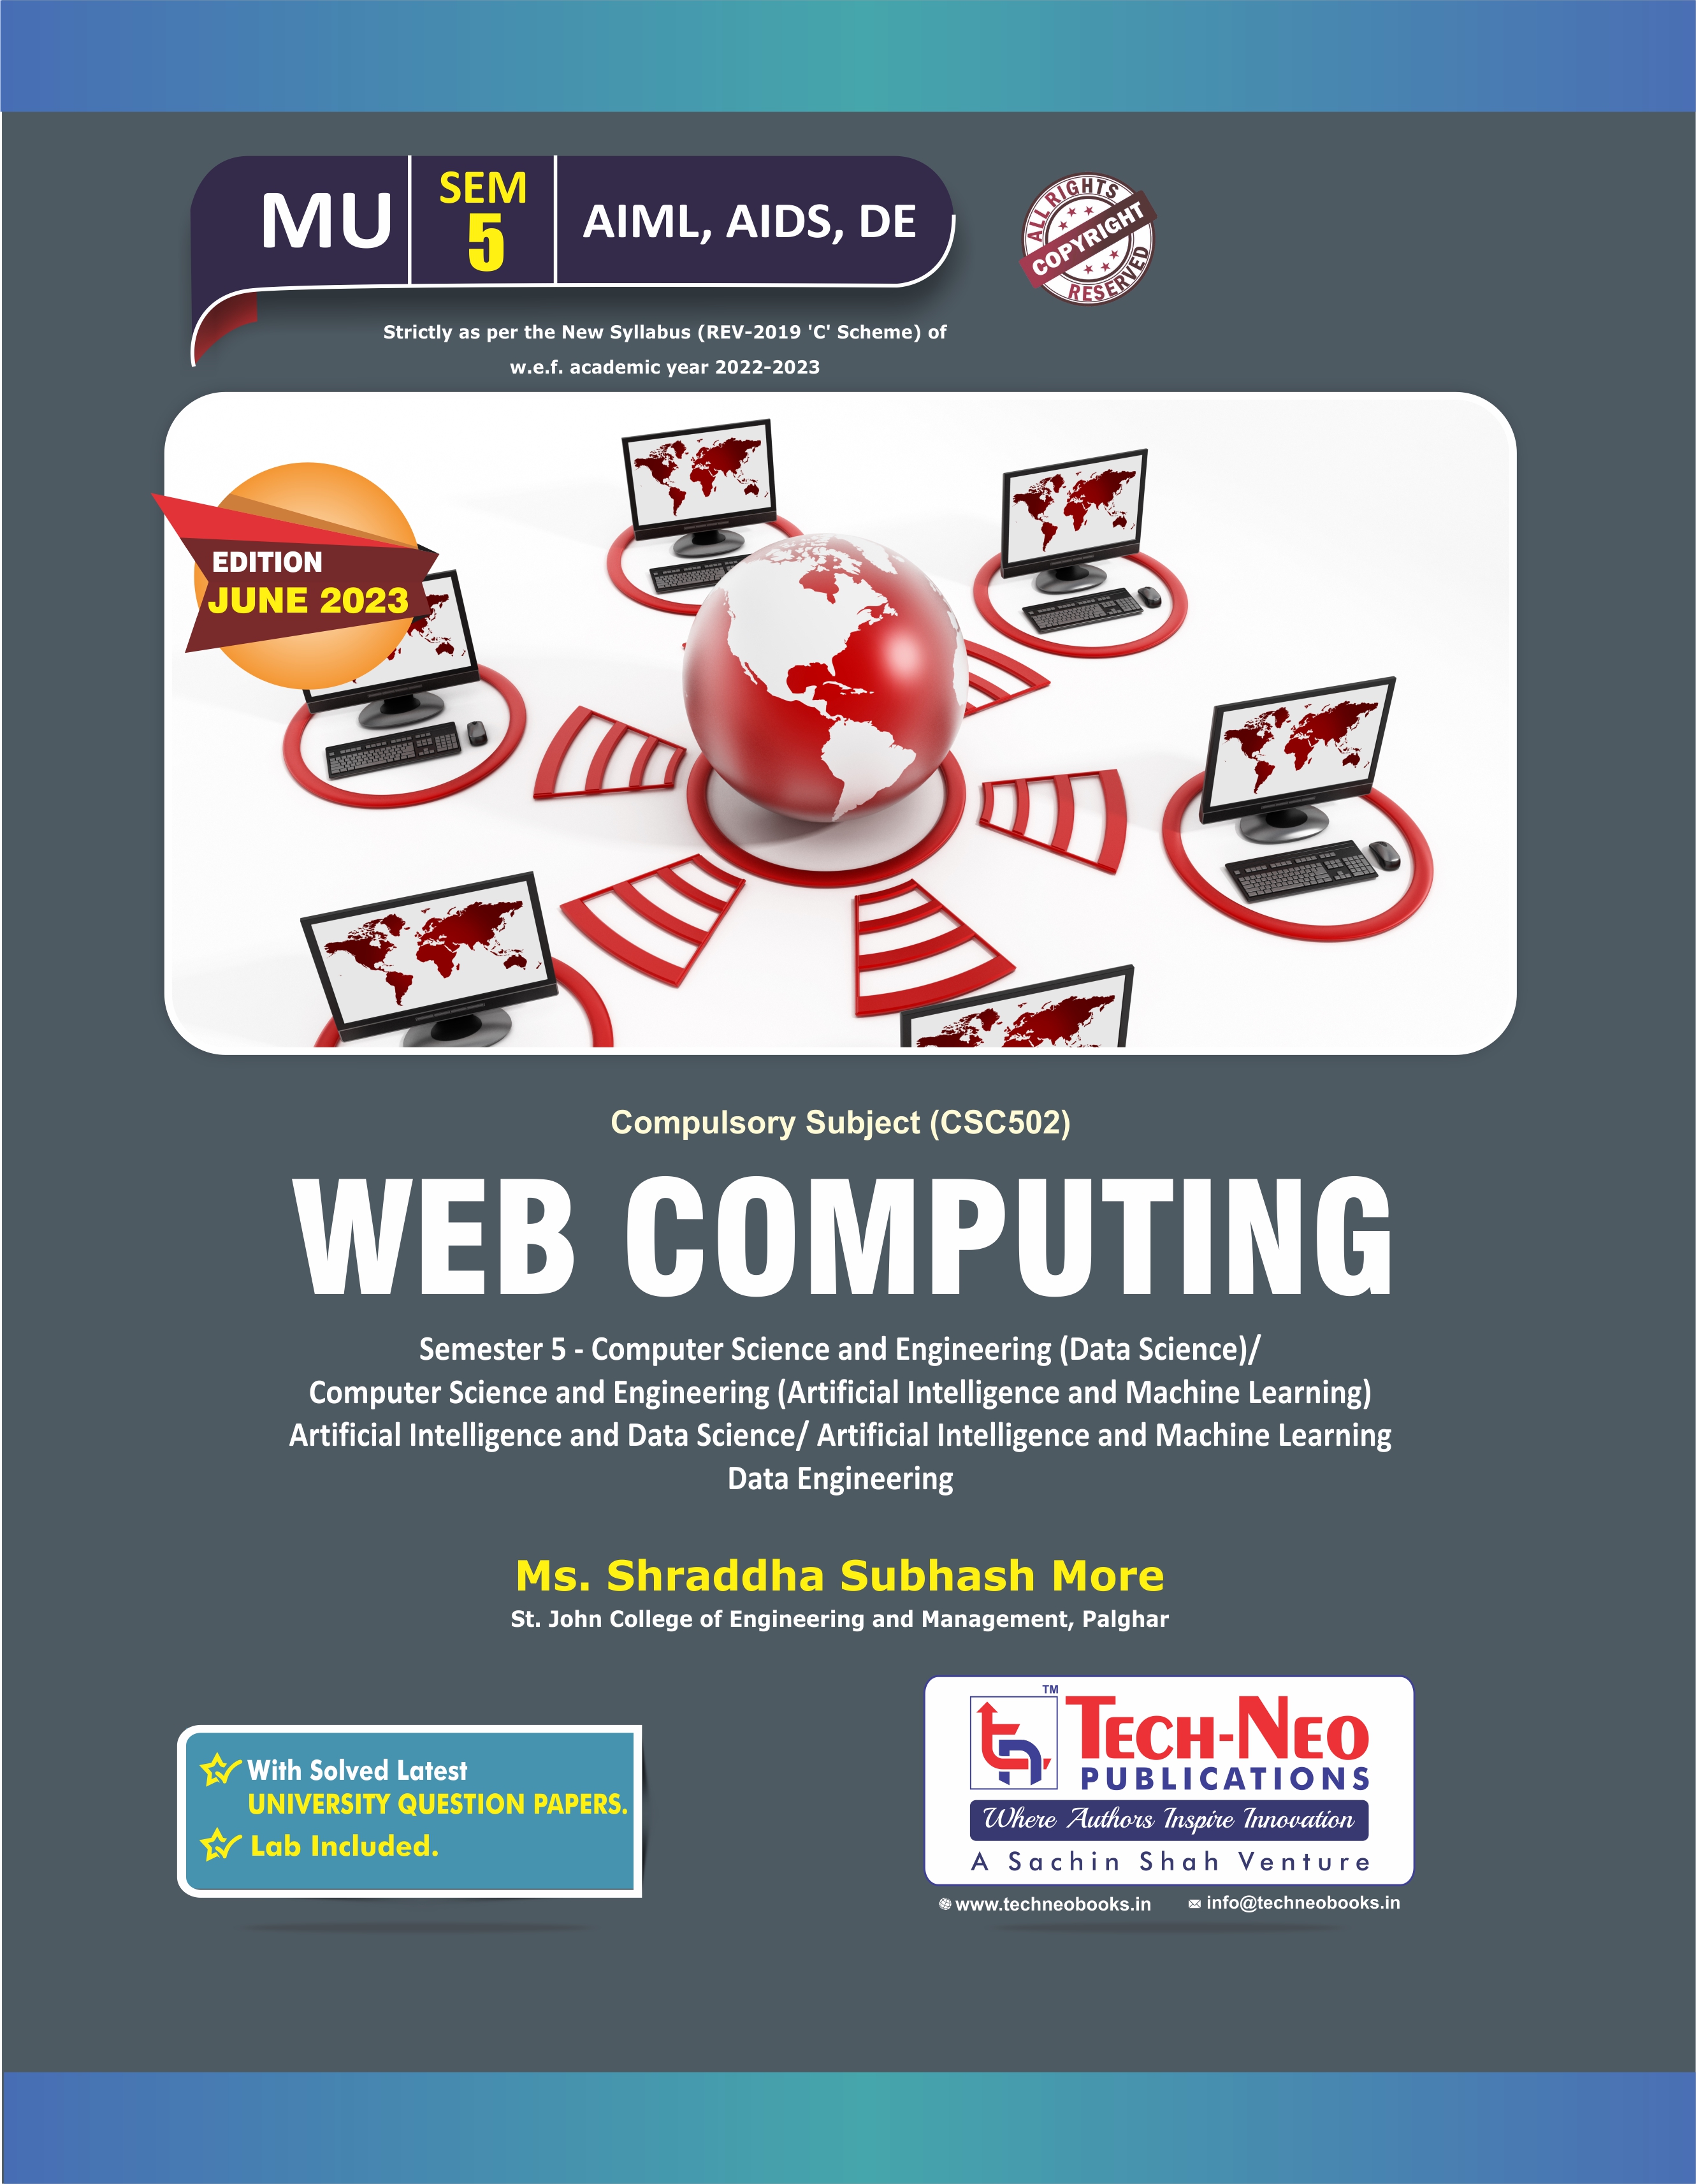 Web Computing